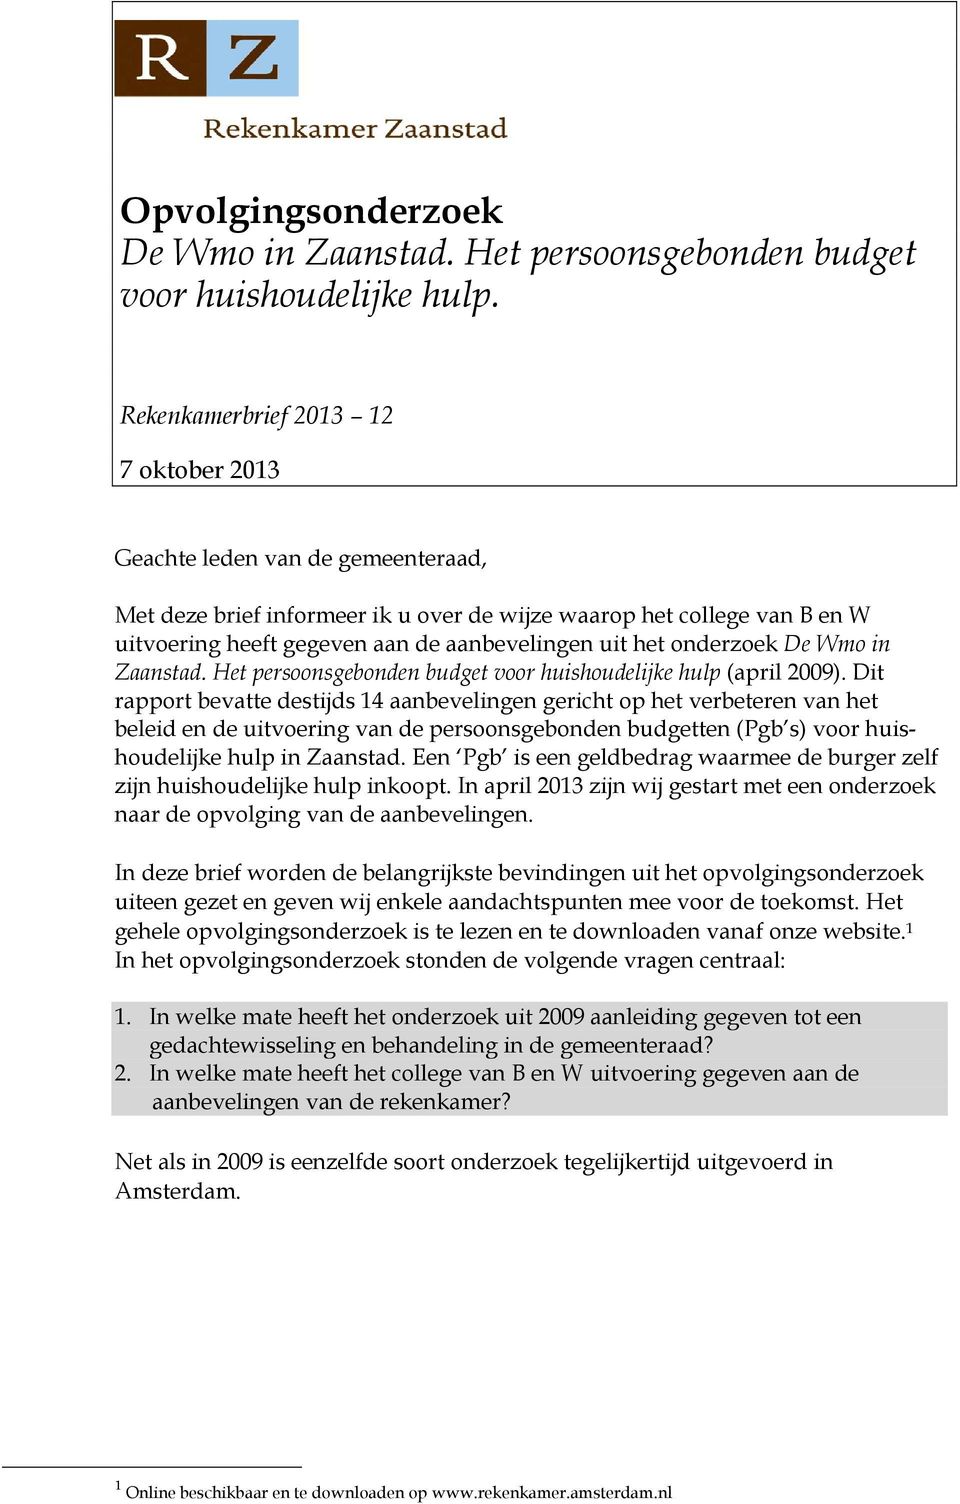 het onderzoek De Wmo in Zaanstad. Het persoonsgebonden budget voor huishoudelijke hulp (april 2009).